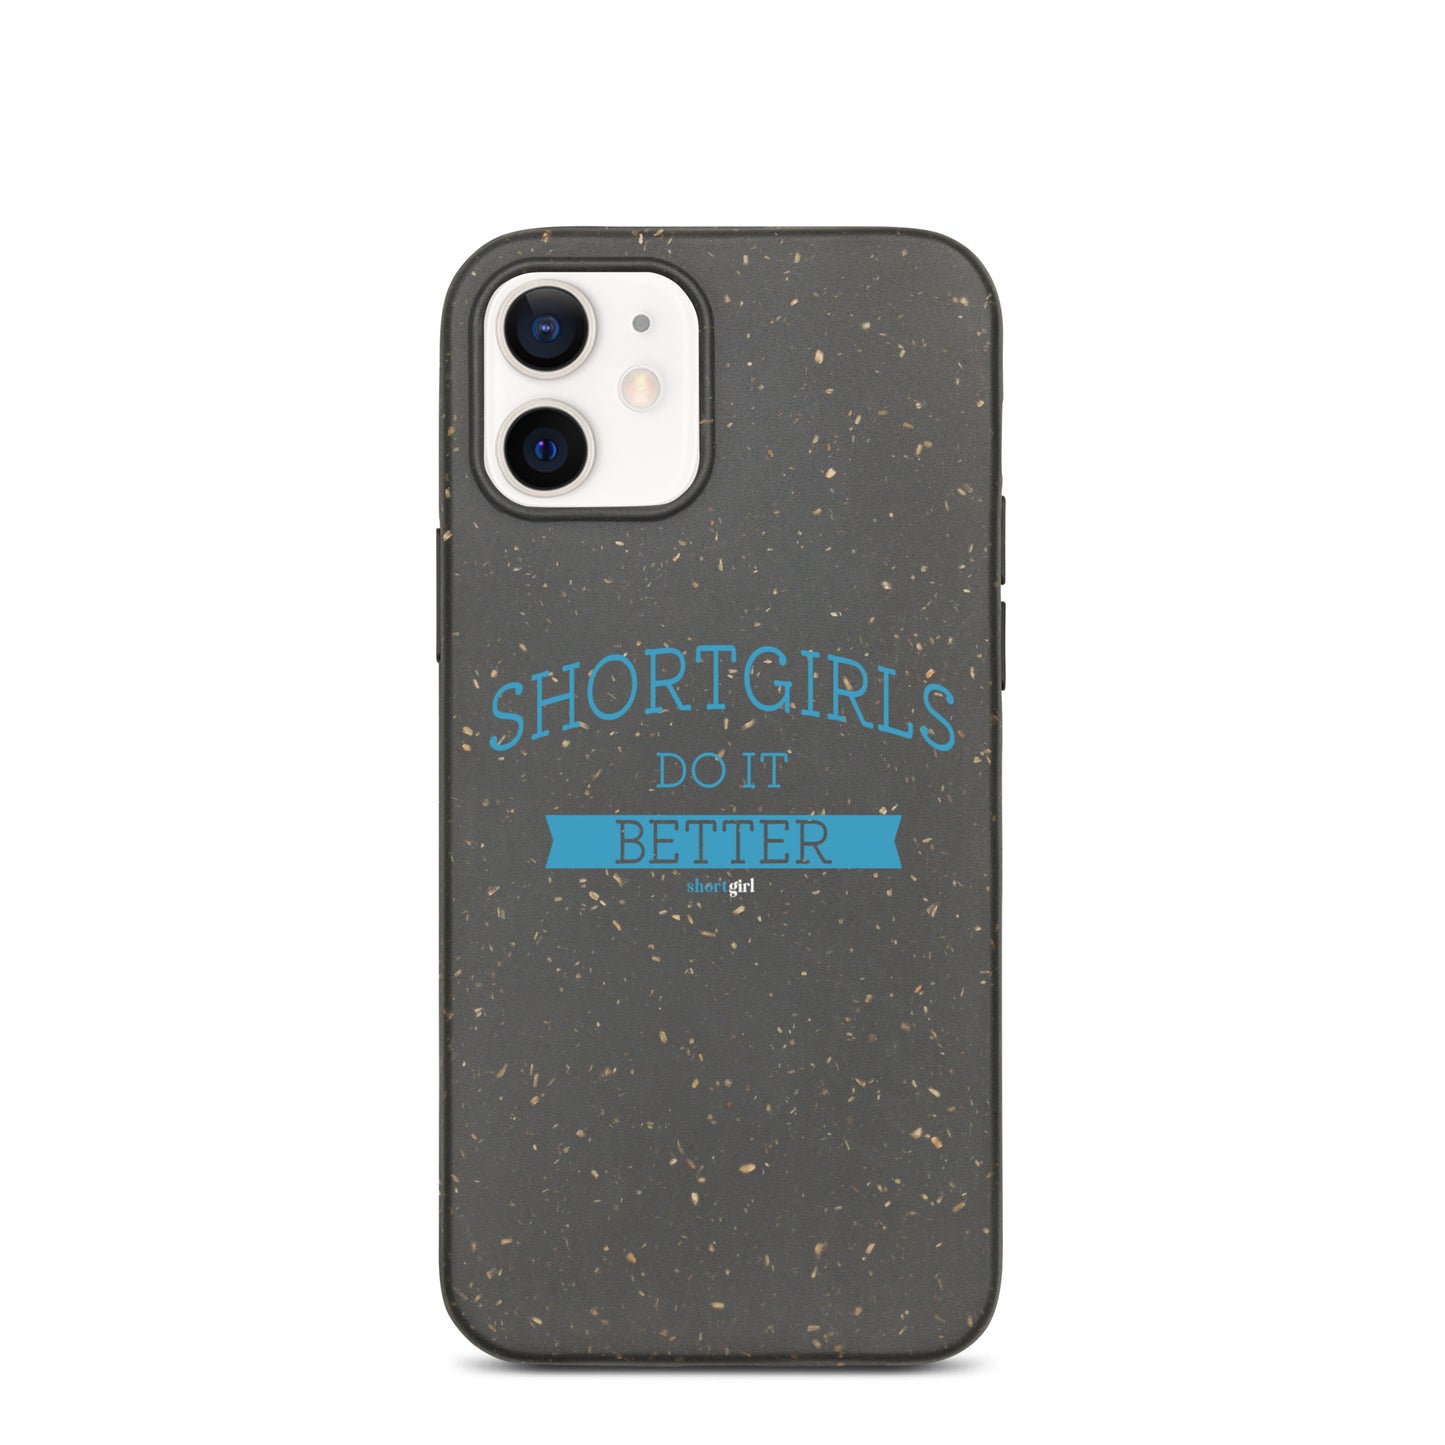 Speckled iPhone case - shortgirl do it better